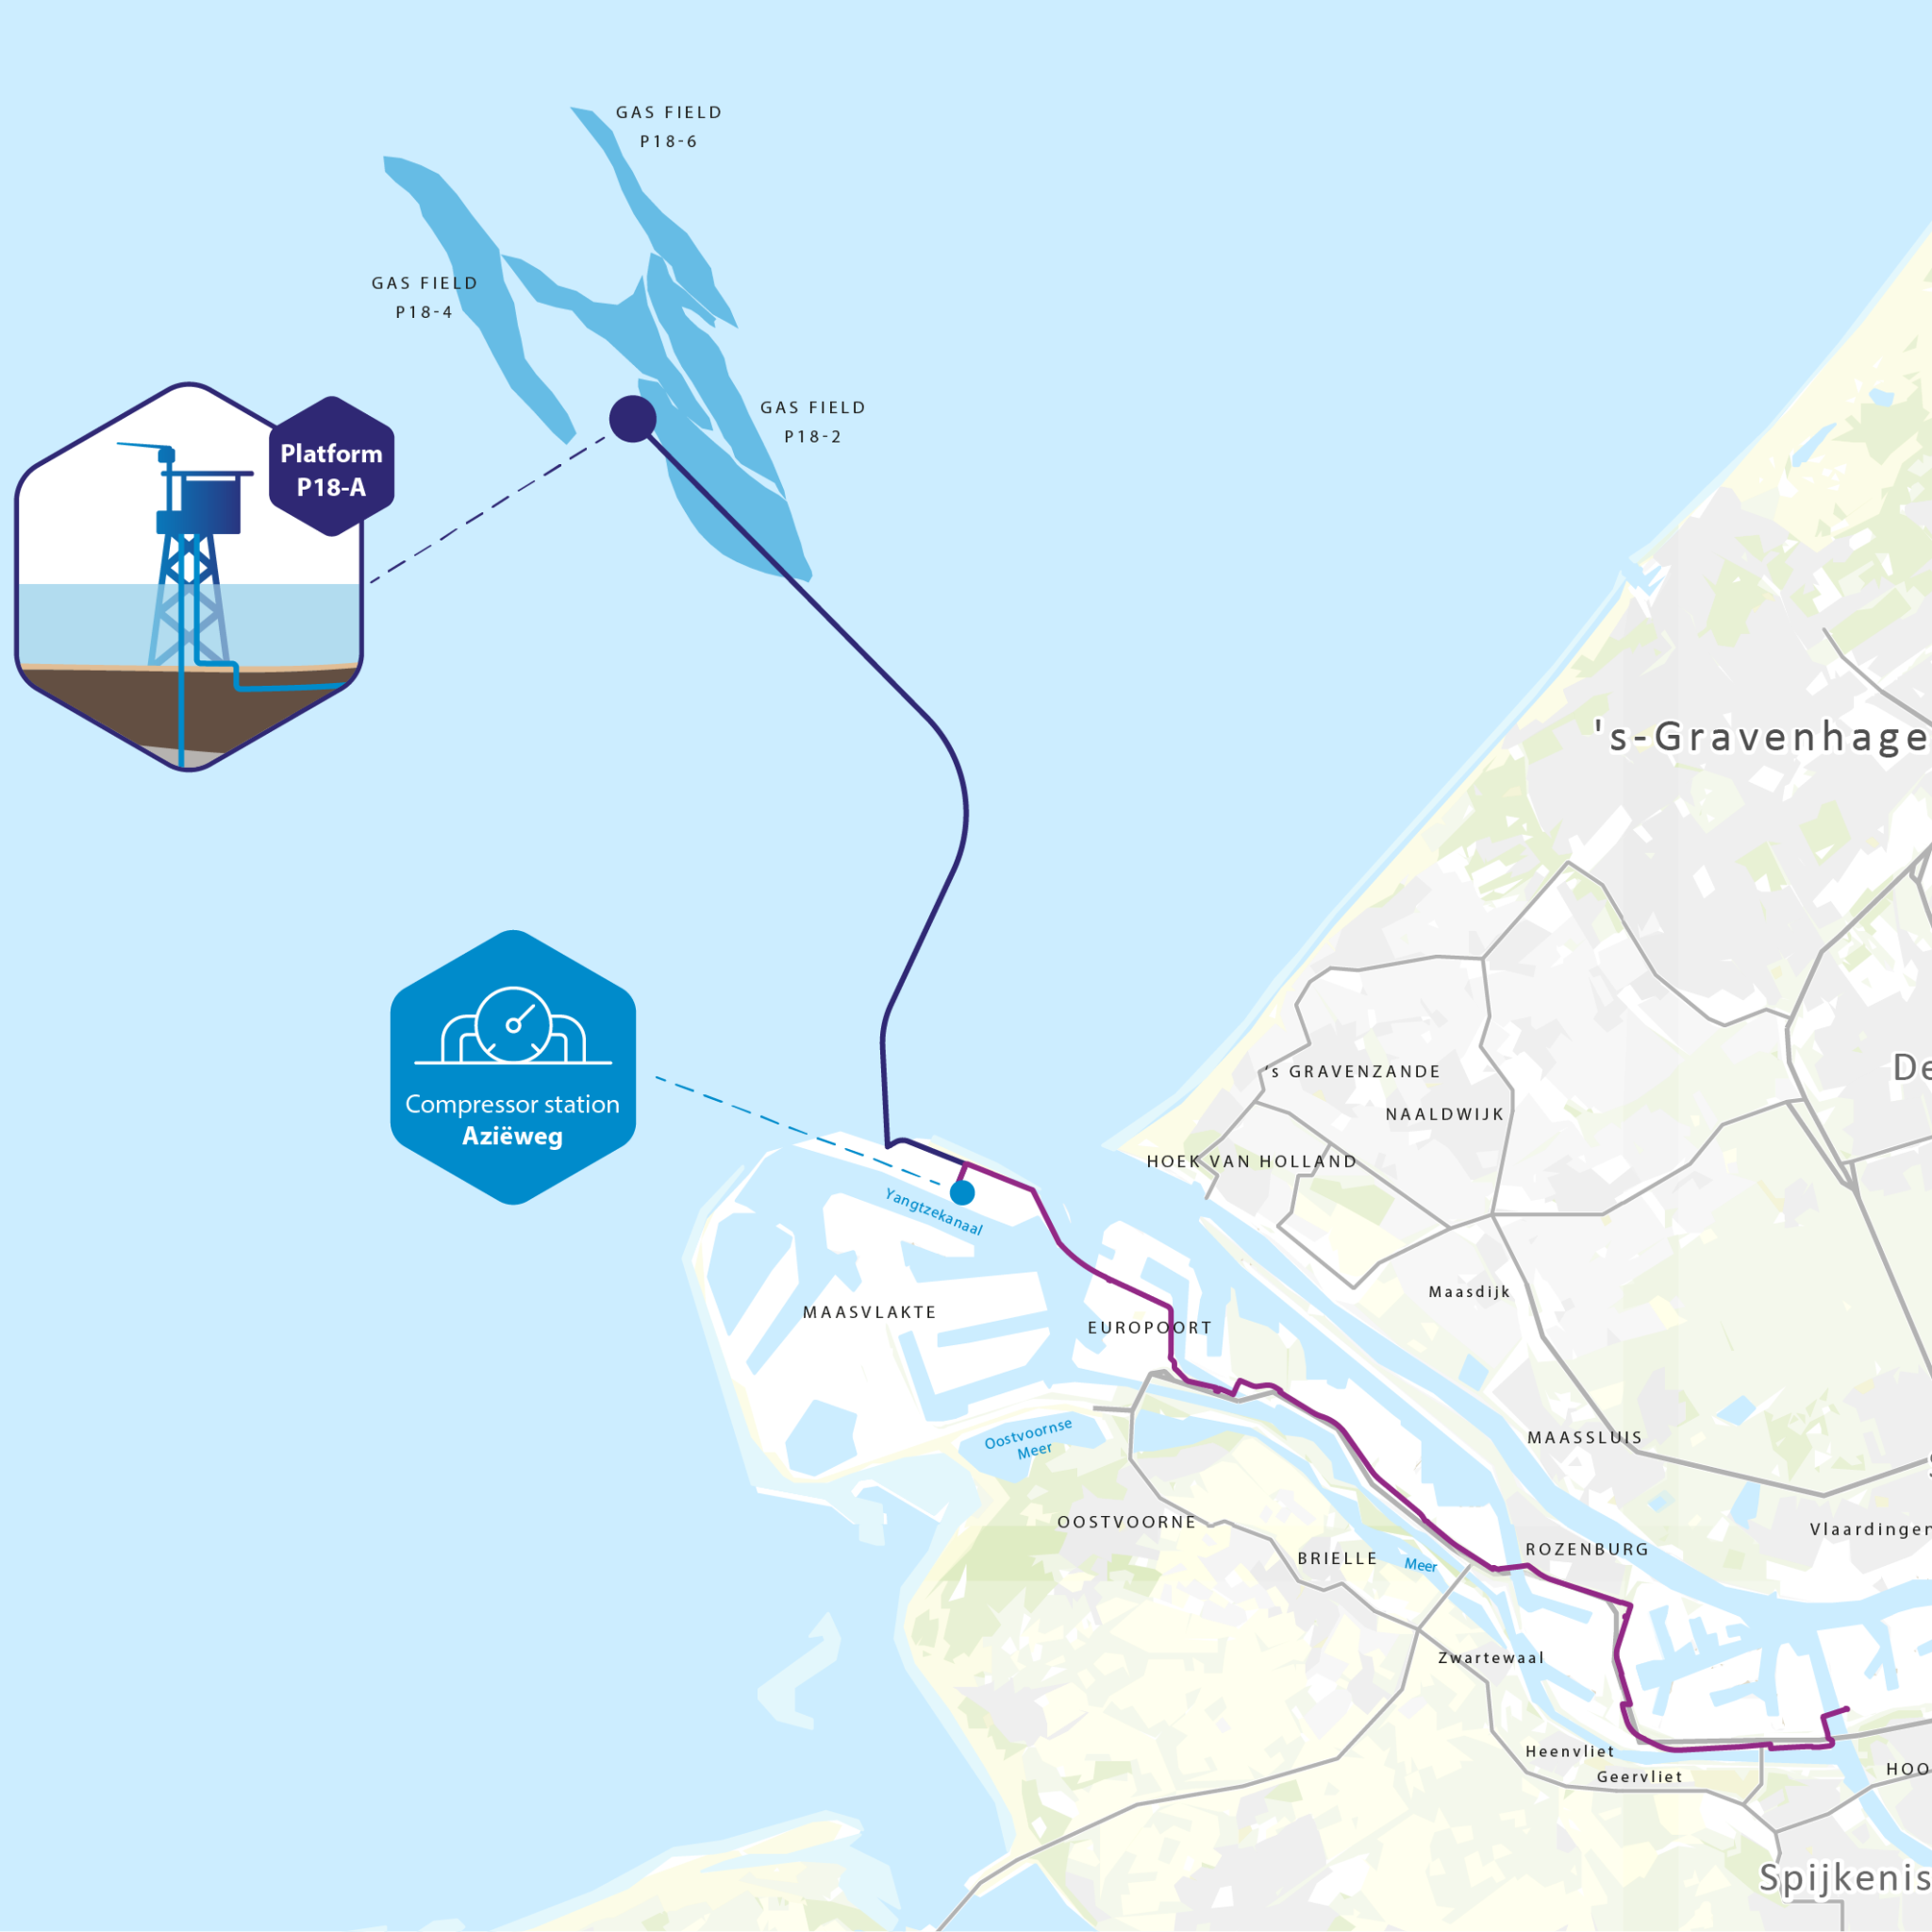 Het Porthos-project zorgt voor het afvangen en transporteren van CO2 naar opslagplaatsen in lege gasvelden onder de Noordzee. (Beeld Porthos)